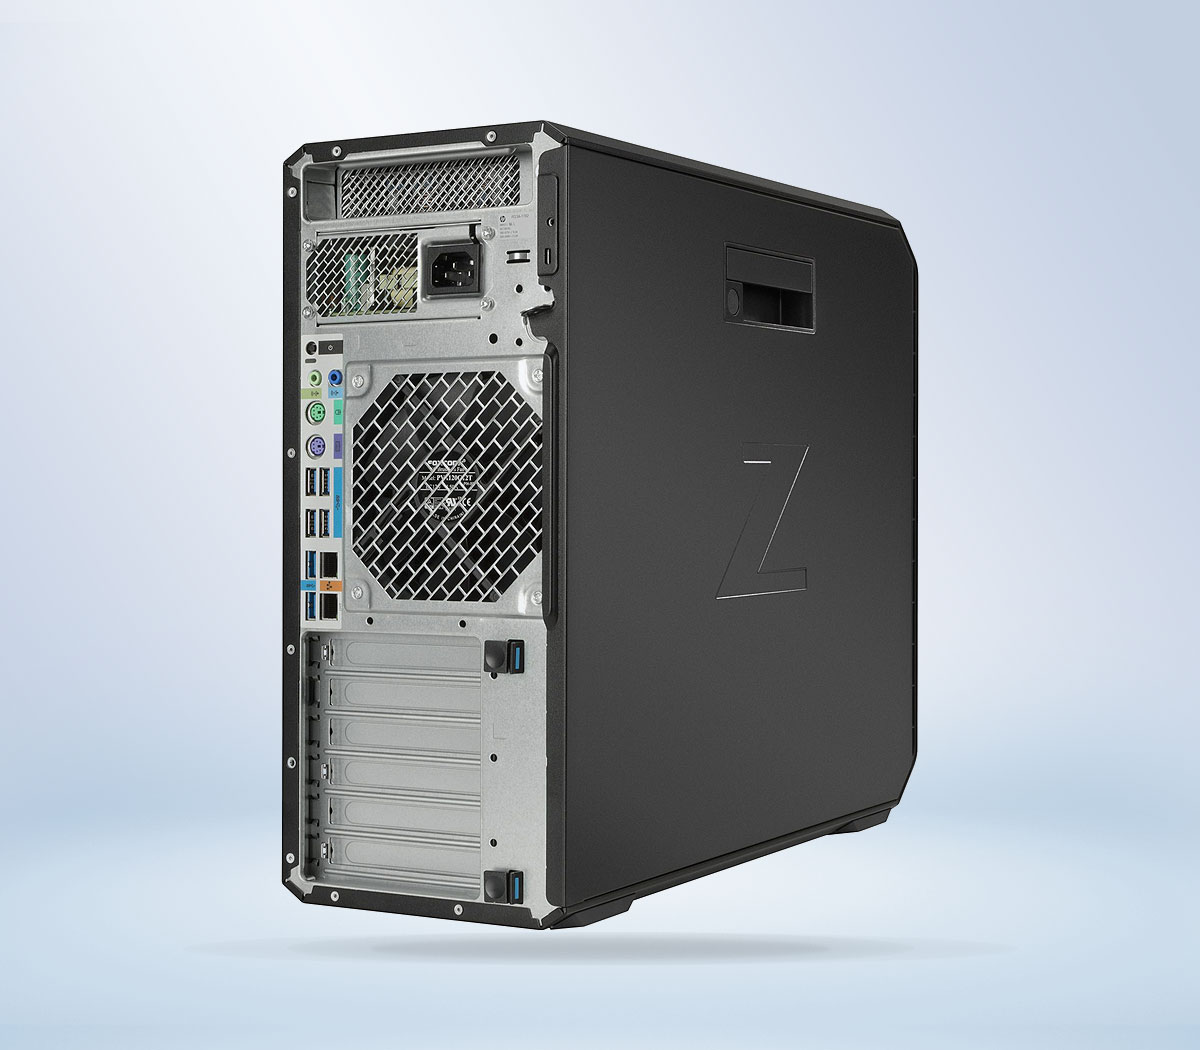 HP Z4 G4 | Xeon W-2235 | 8G RAM | 256G SSD | Tower Workstation